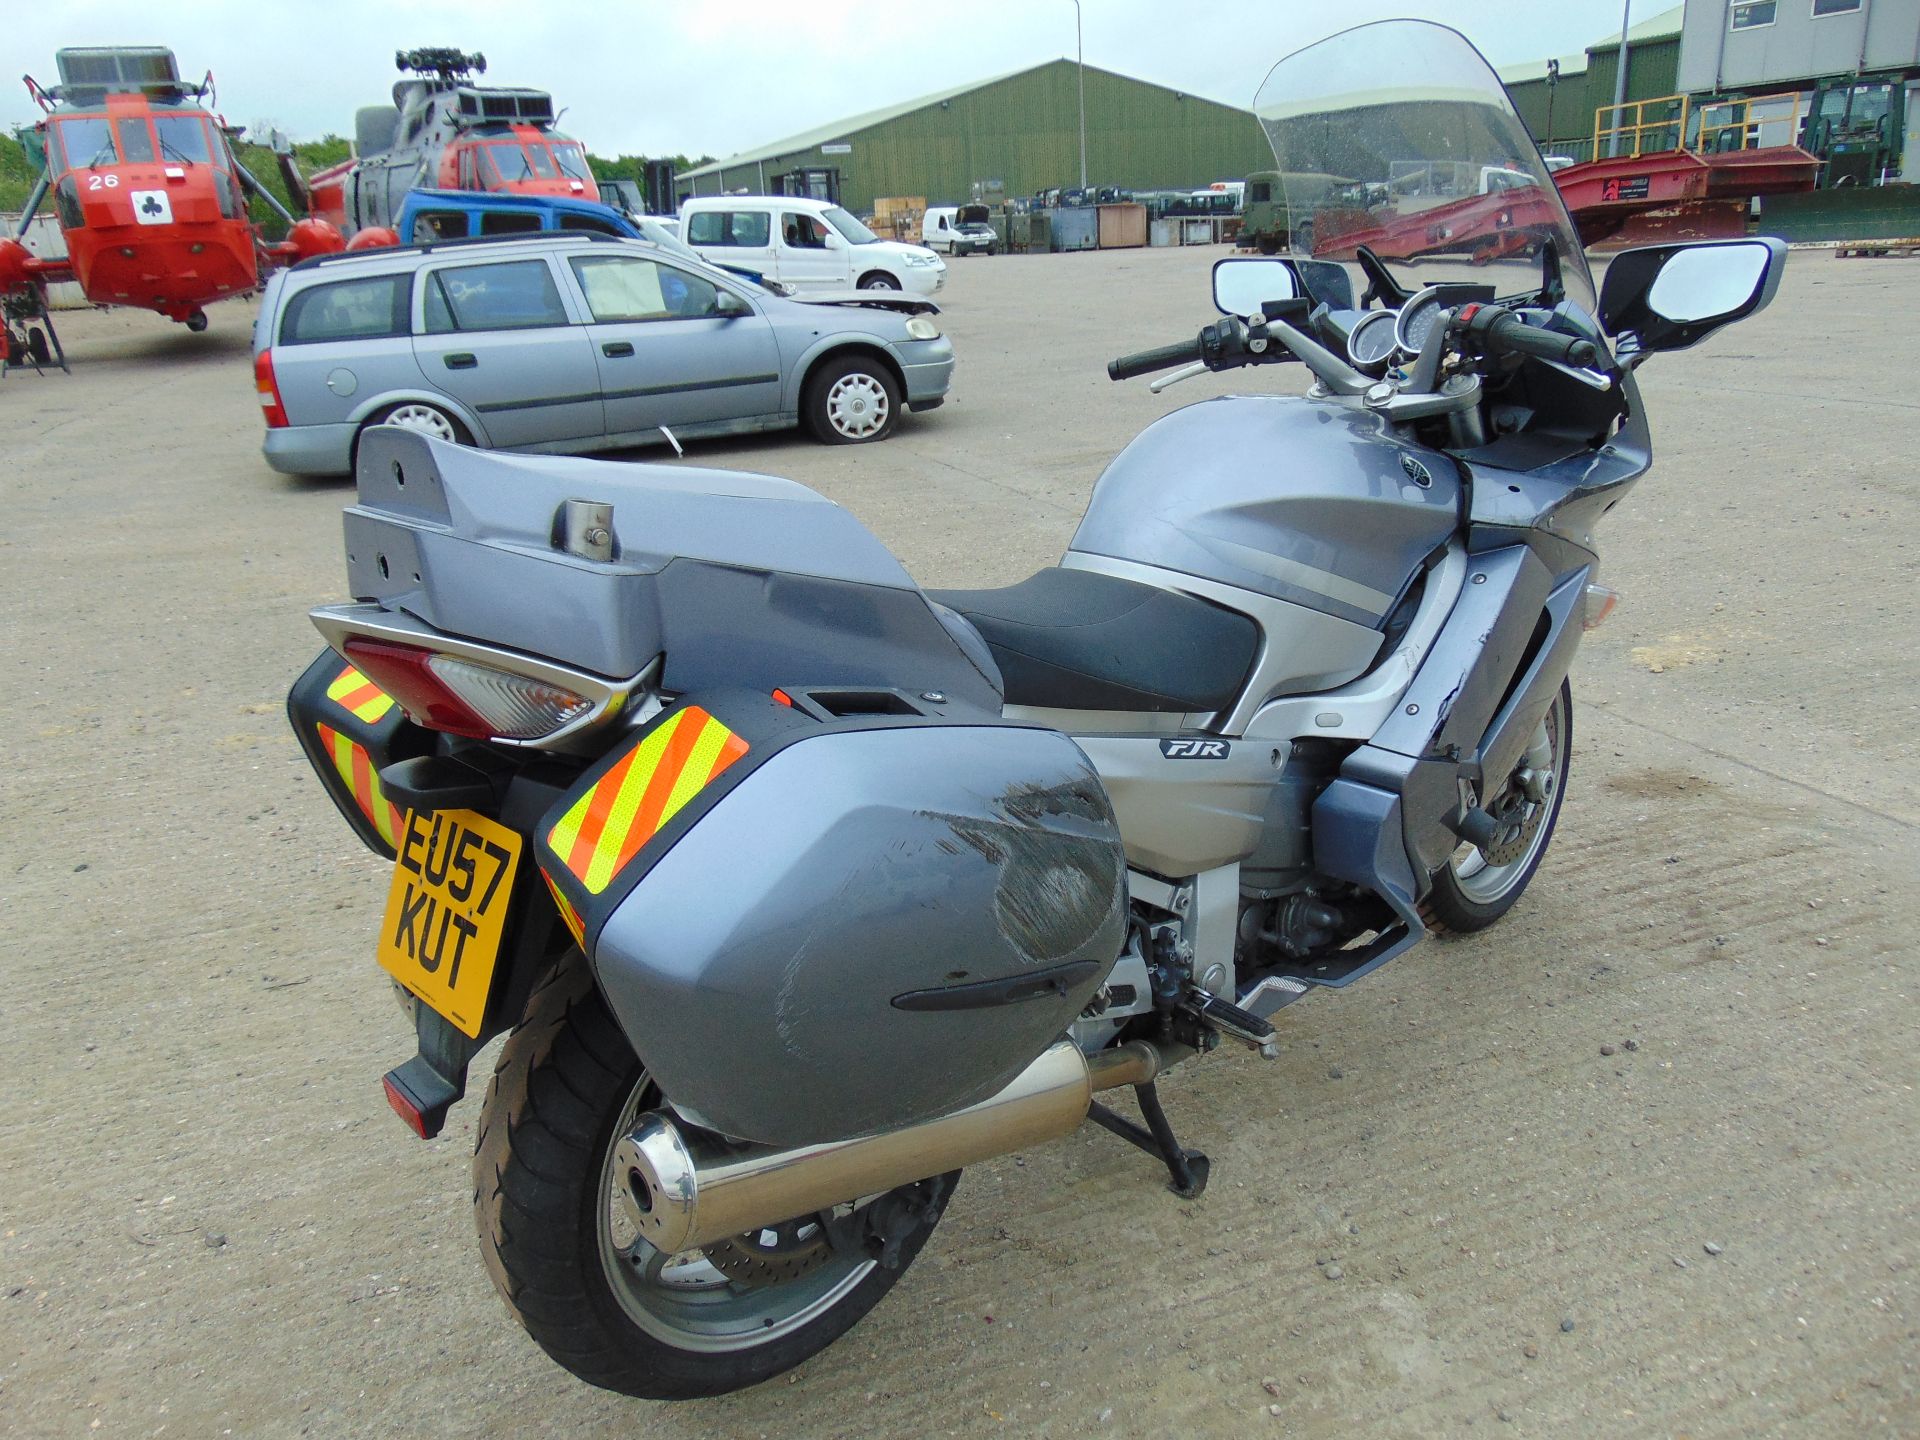 2008 Yamaha FJR1300 Motorbike - Image 8 of 15